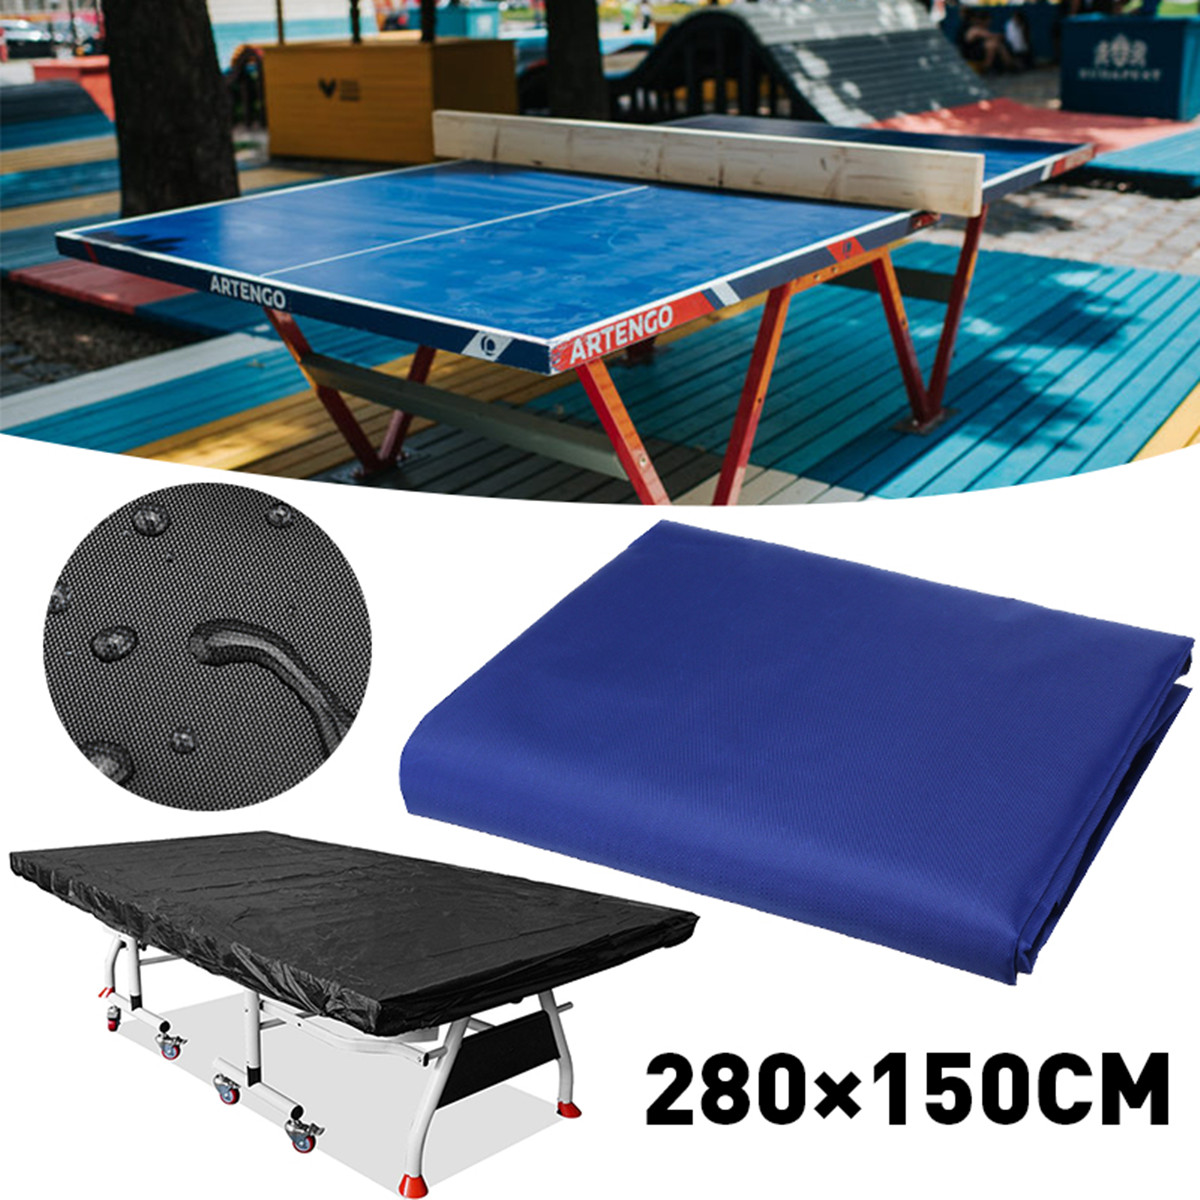 Black-Table-Tennis-Protector-160cm-Waterproof-Dustproof-Ping-Pong-Table-Storage-Cover-1637115-3